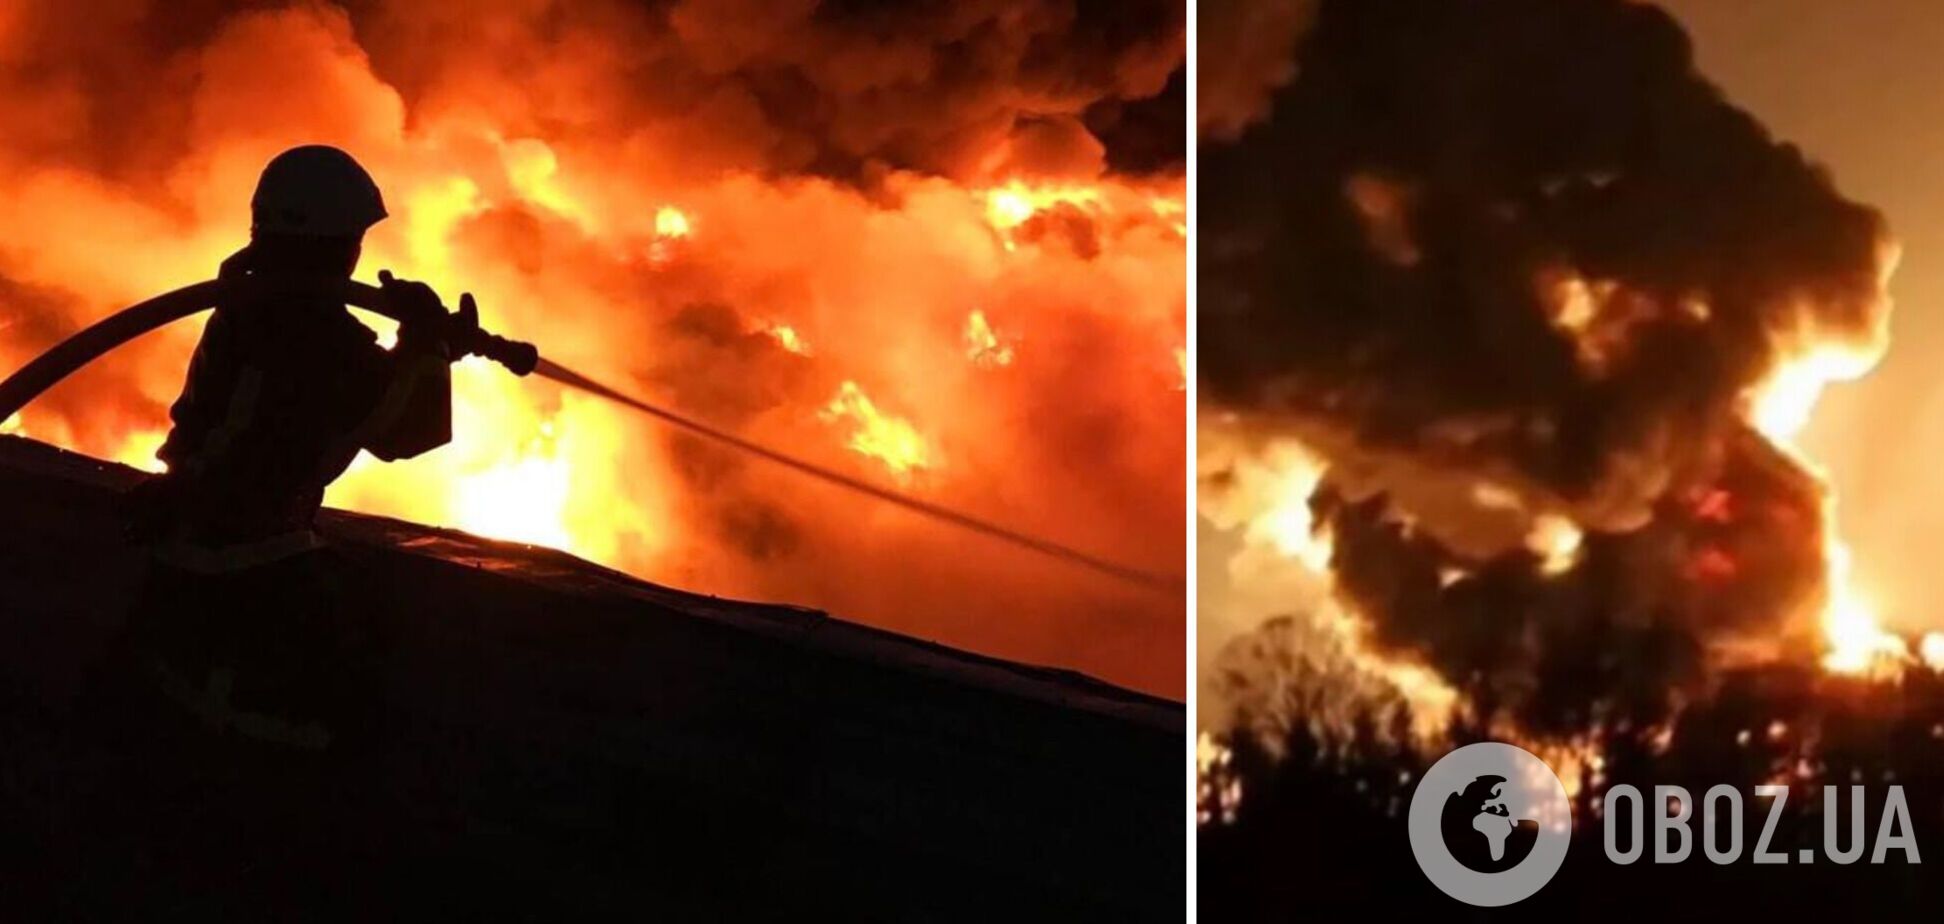 В Тростянце вторые сутки пылает пожар, спасатели не могут попасть на место из-за обстрелов